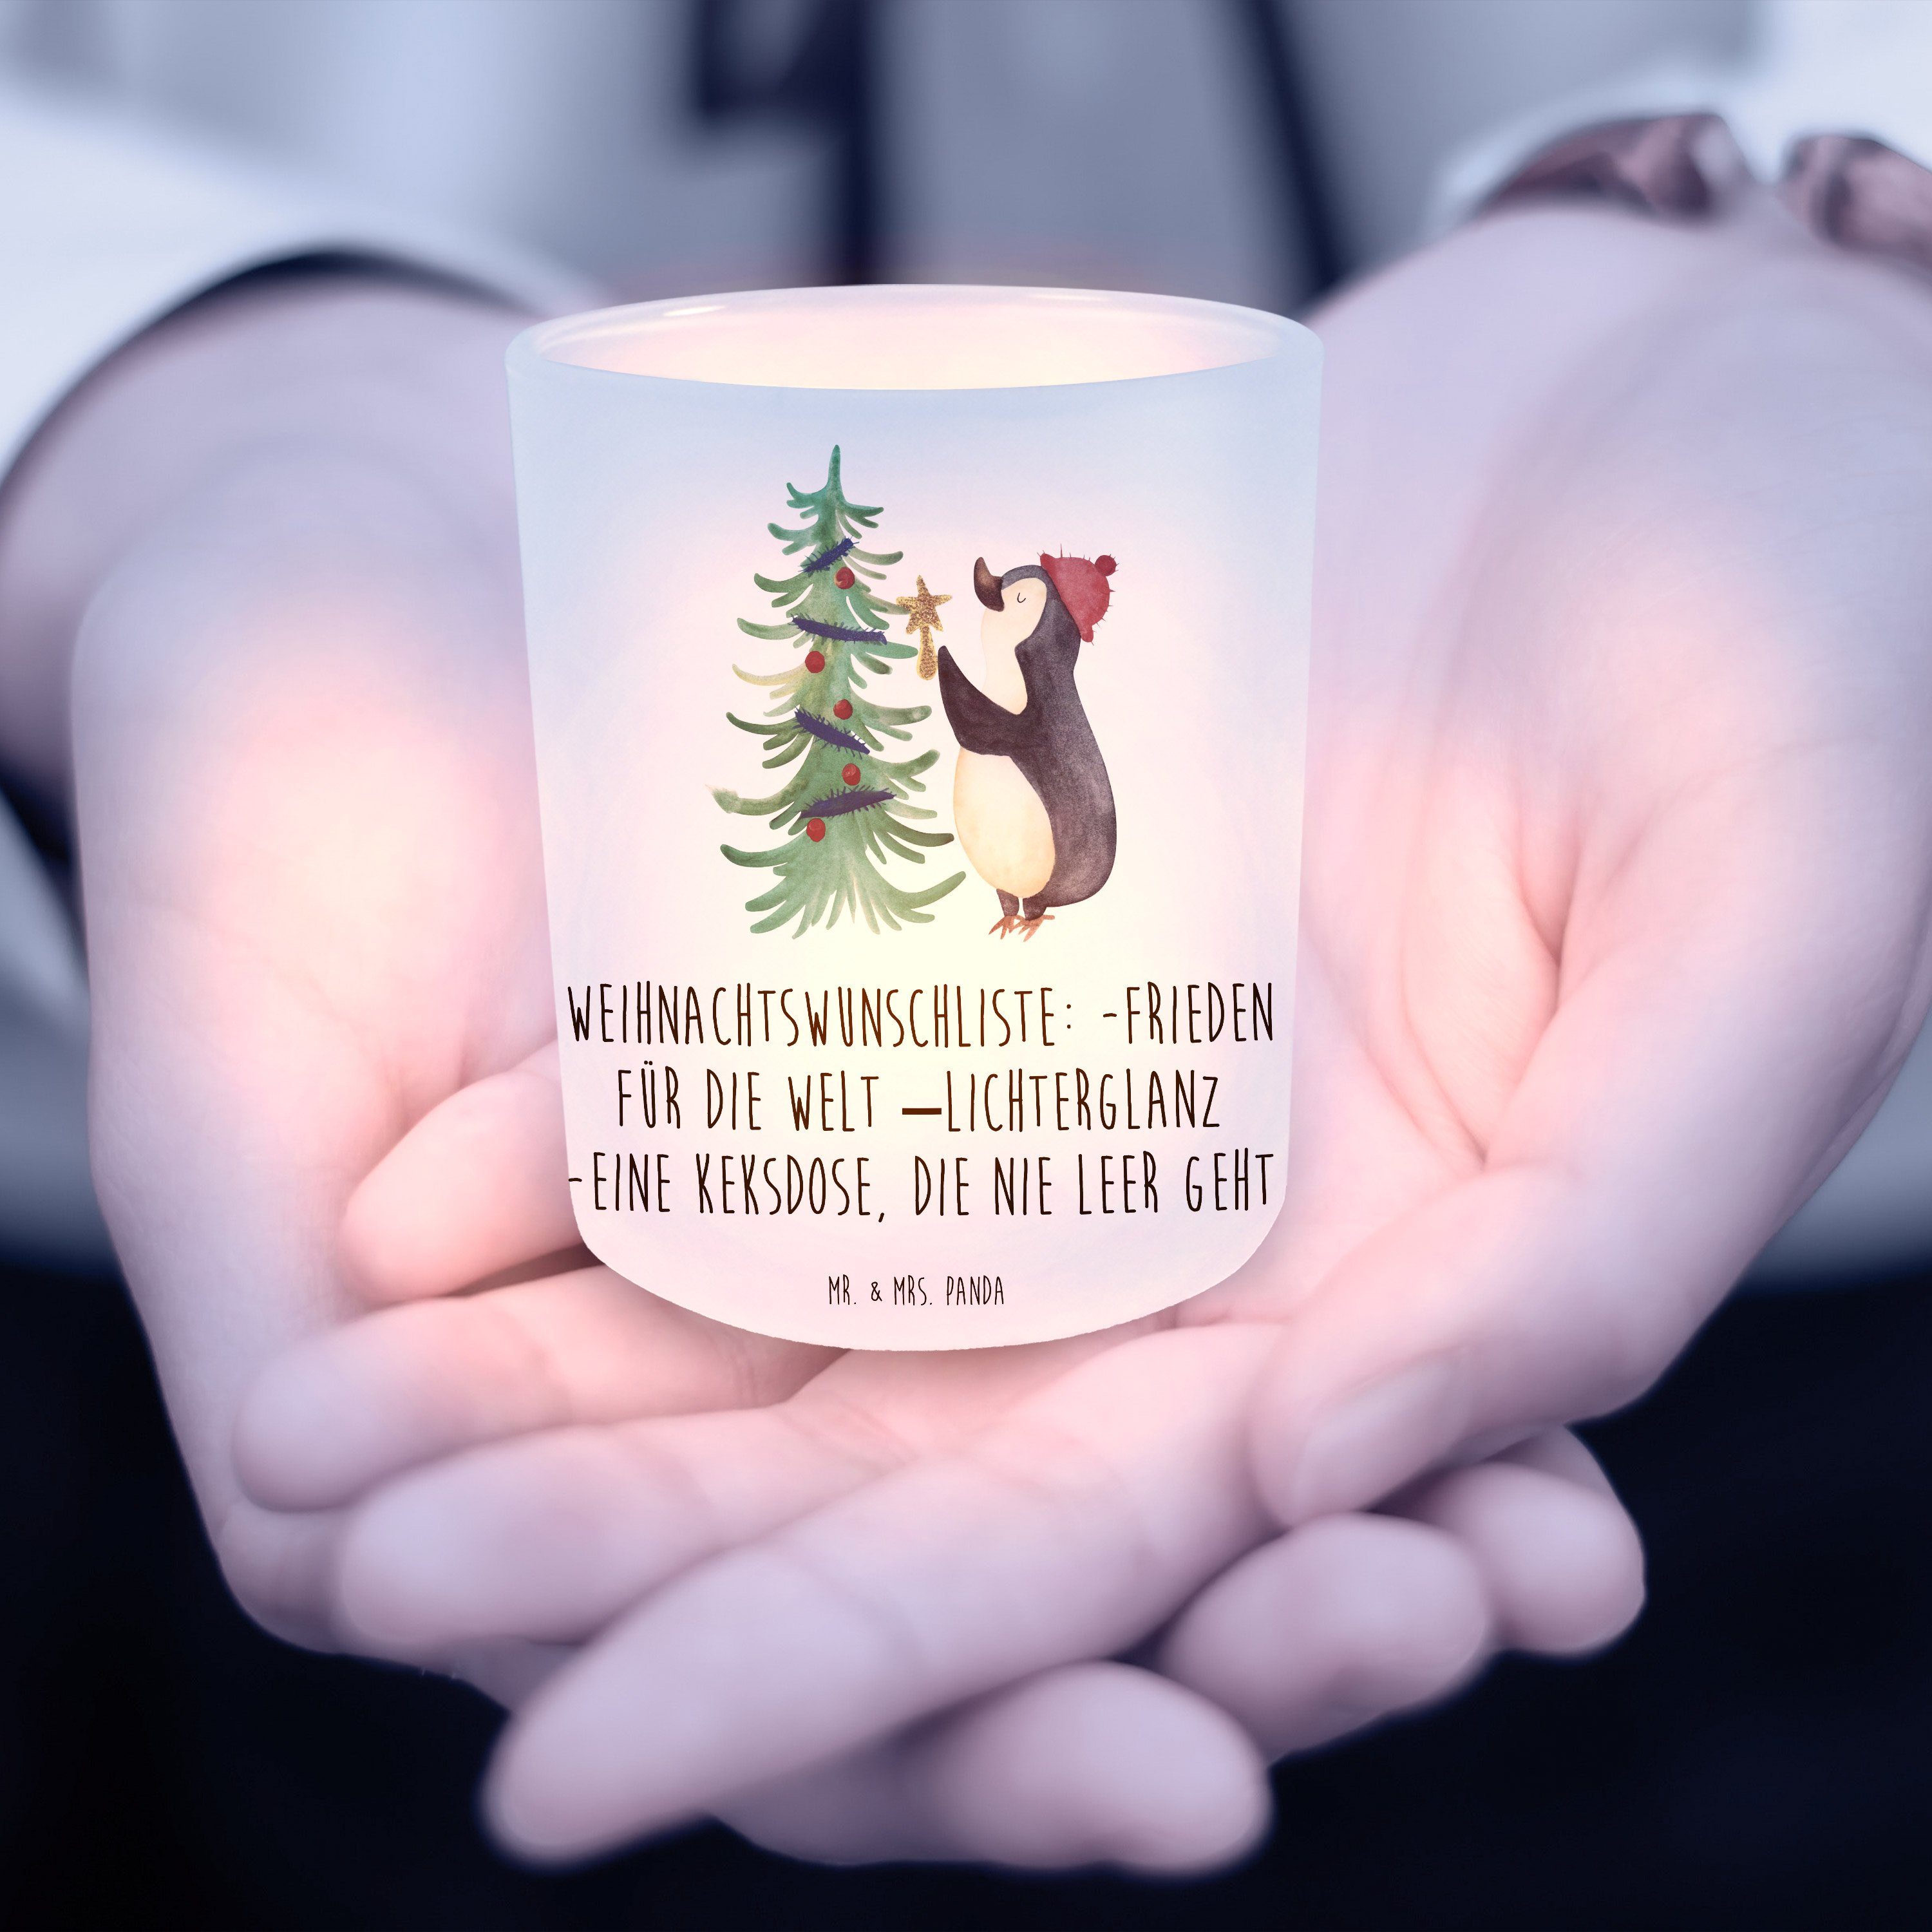 Mr. Teelichter, Mrs. - Transparent Winter, - Panda Geschenk, Pinguin Weihnachtsbaum & St) (1 Windlicht